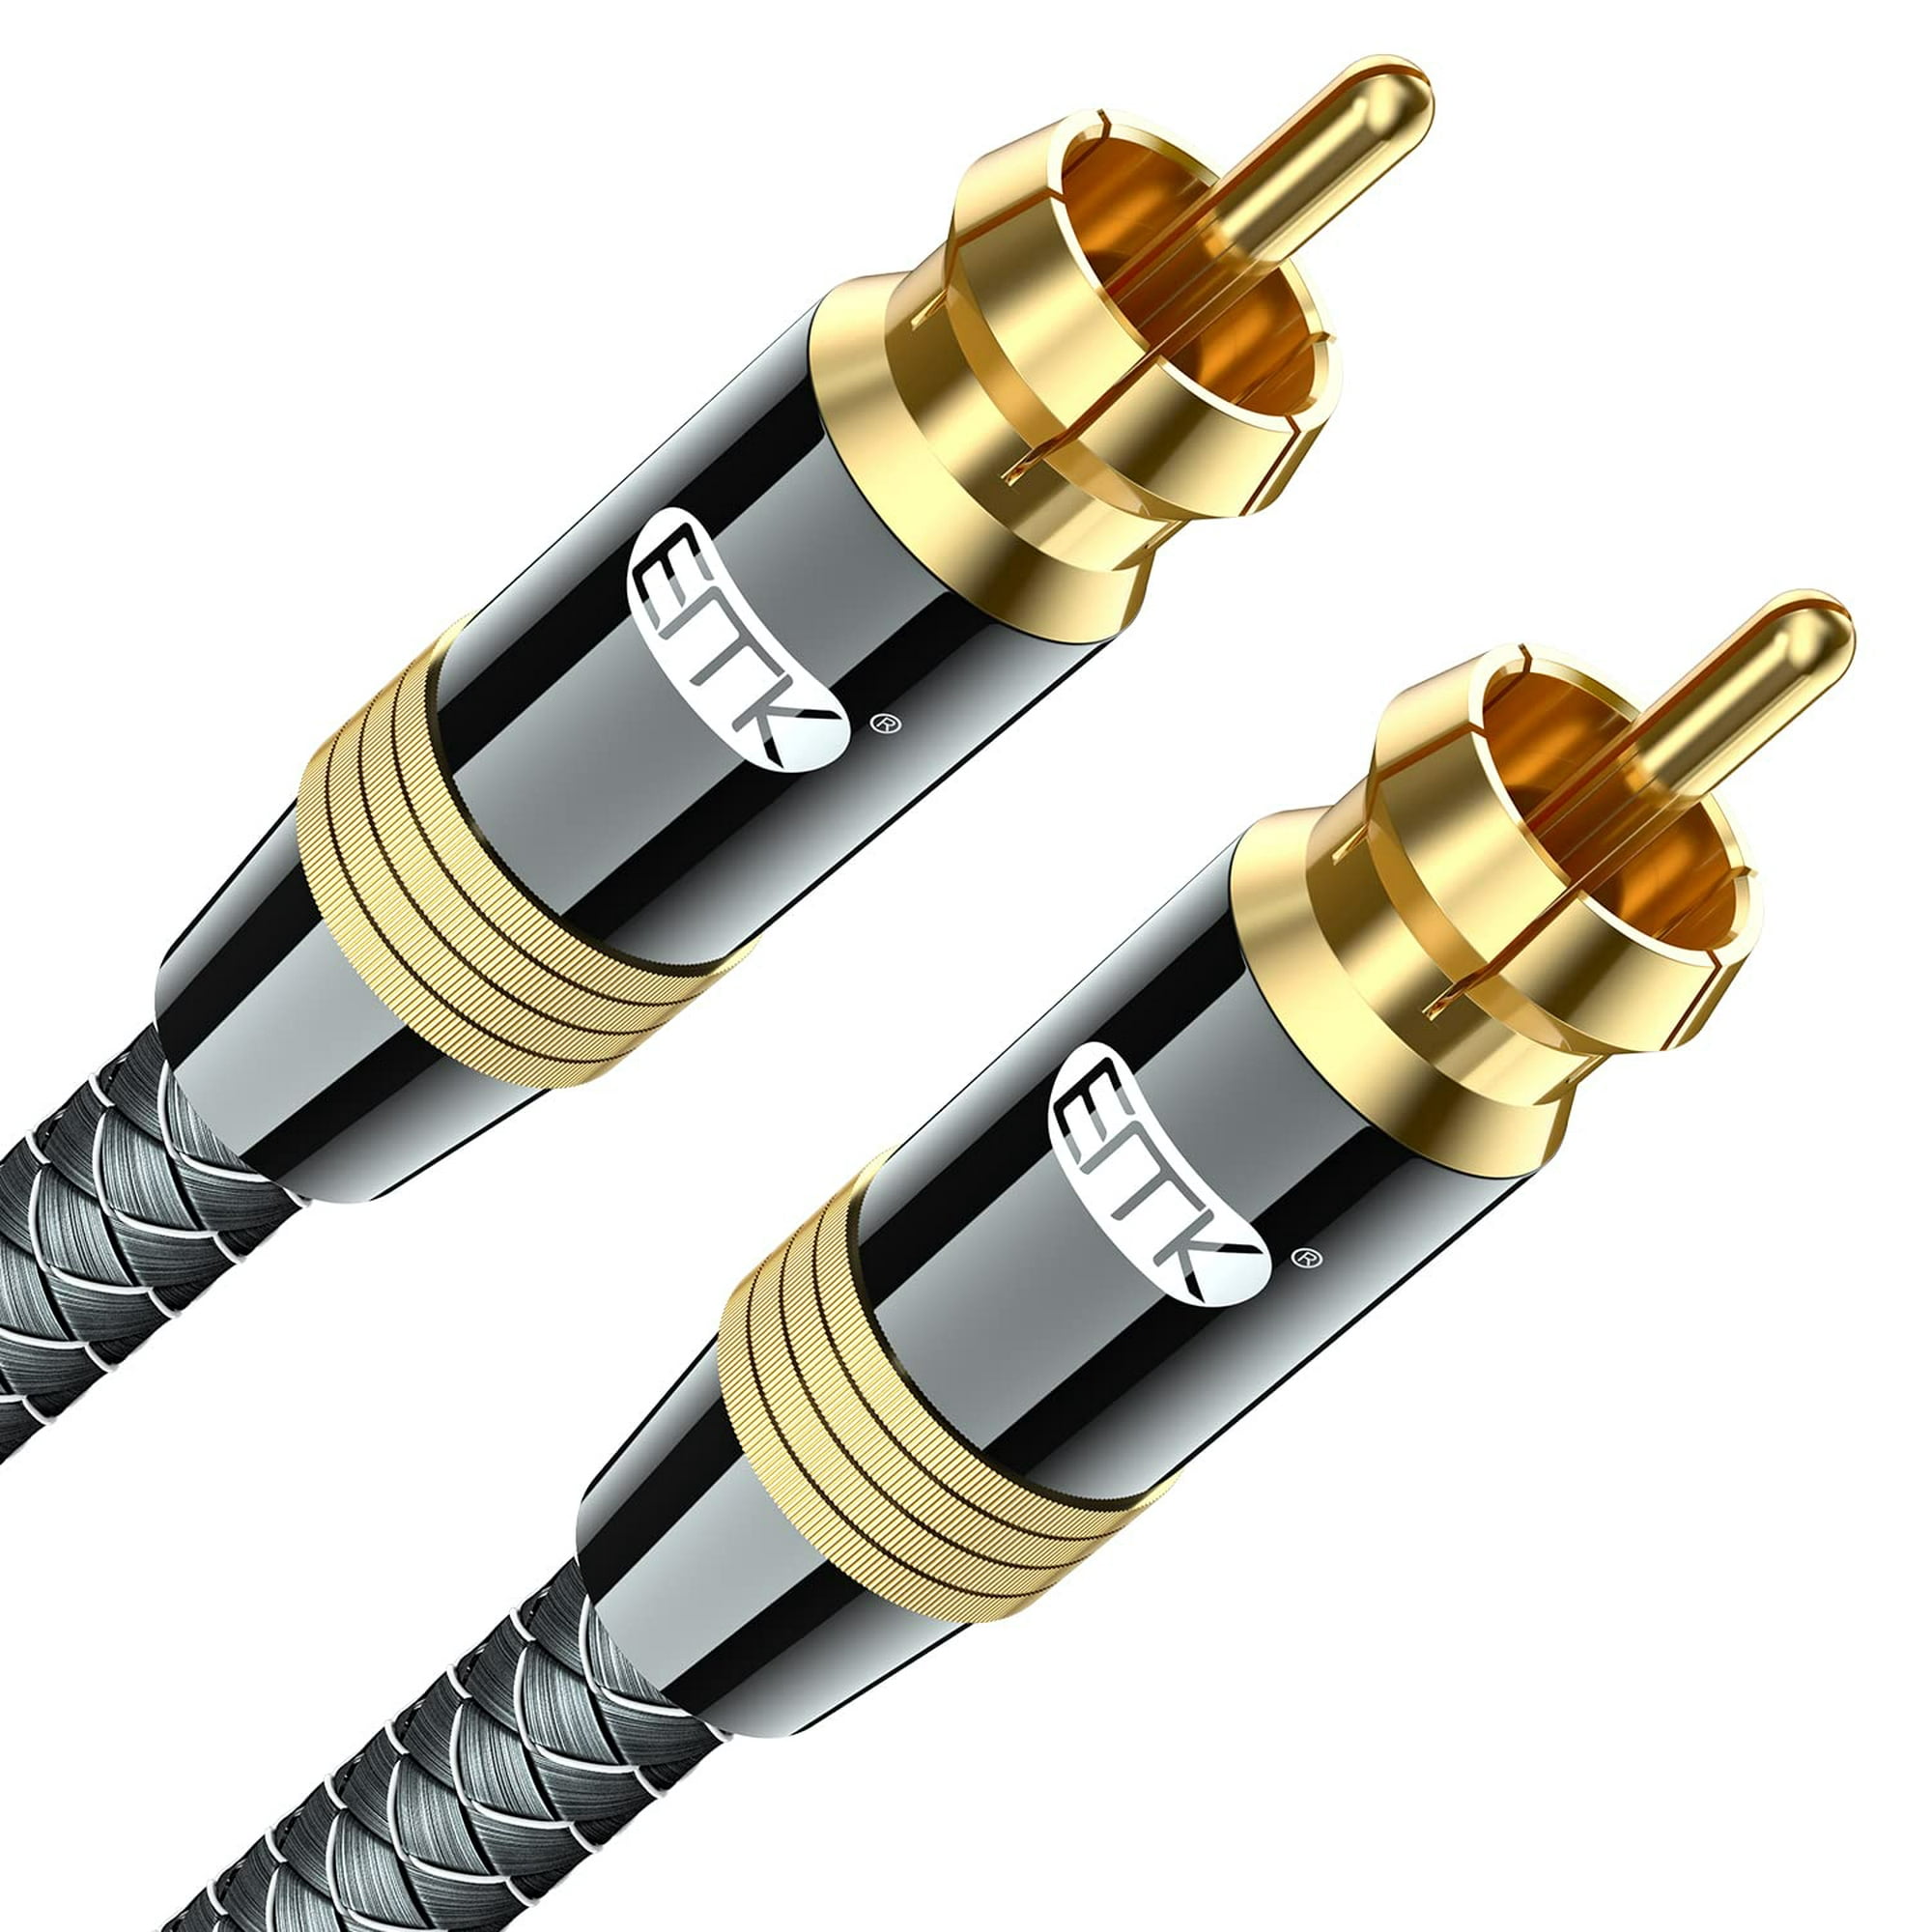 Cable Coaxial de Audio Digital, Cable de Subwoofer chapado en oro